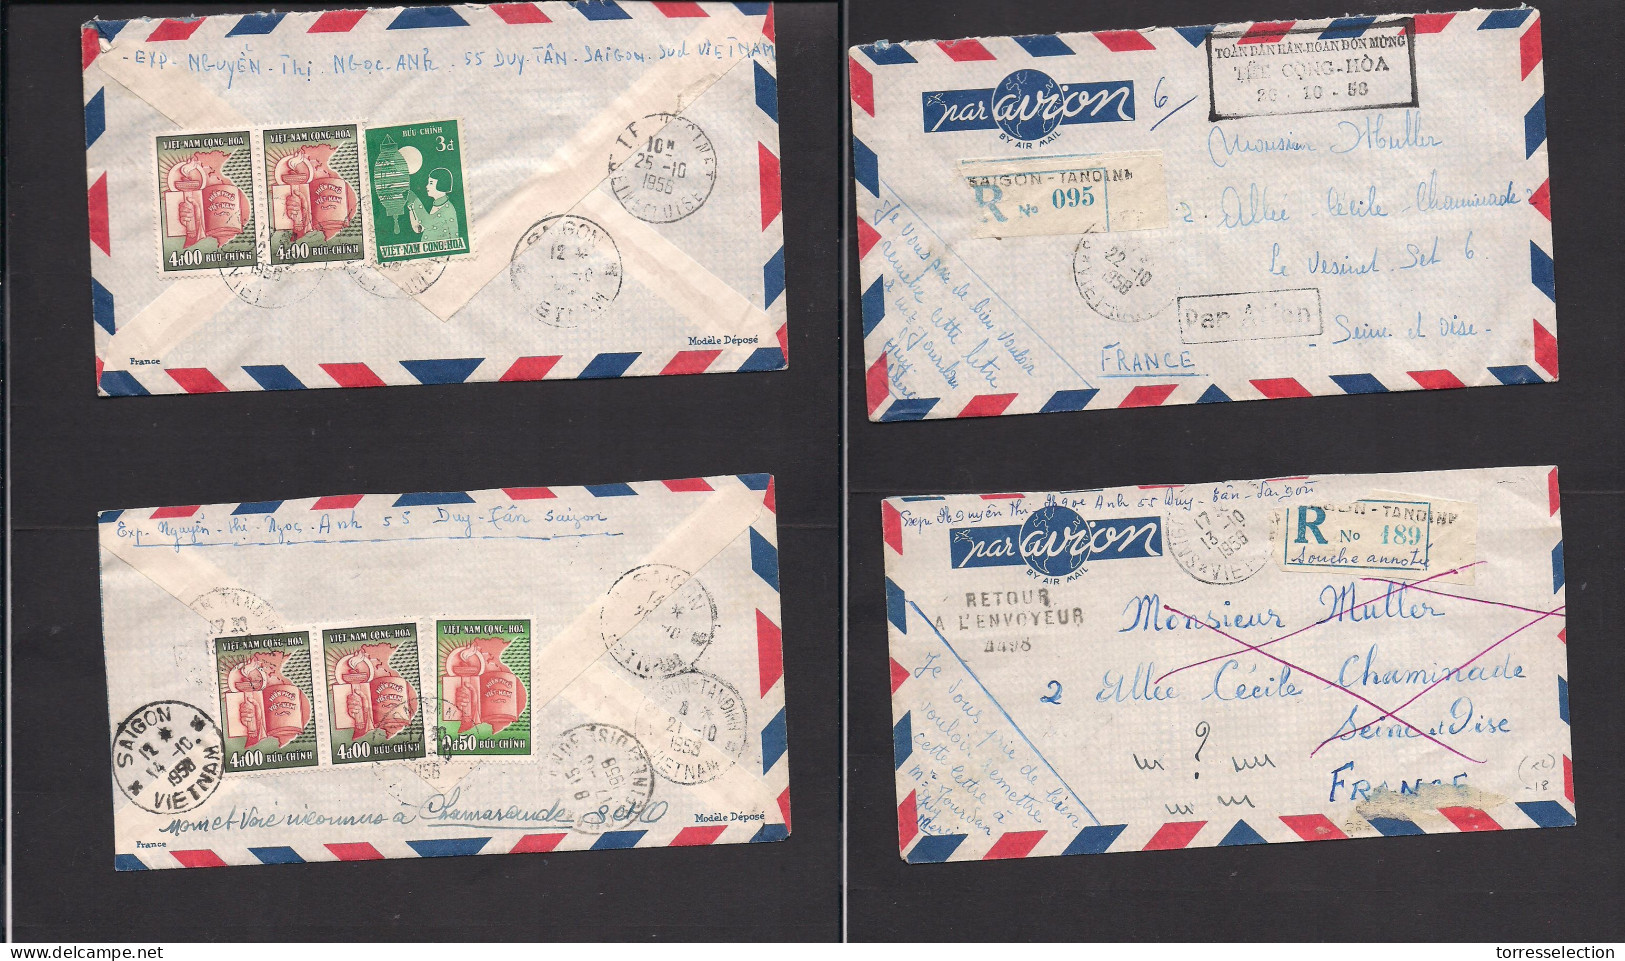 INDOCHINA. 1956. Vietnam. Saignon - France. 2 Airmails Reverse Multifkd Envelope. Fine Pair. XSALE. - Andere-Azië